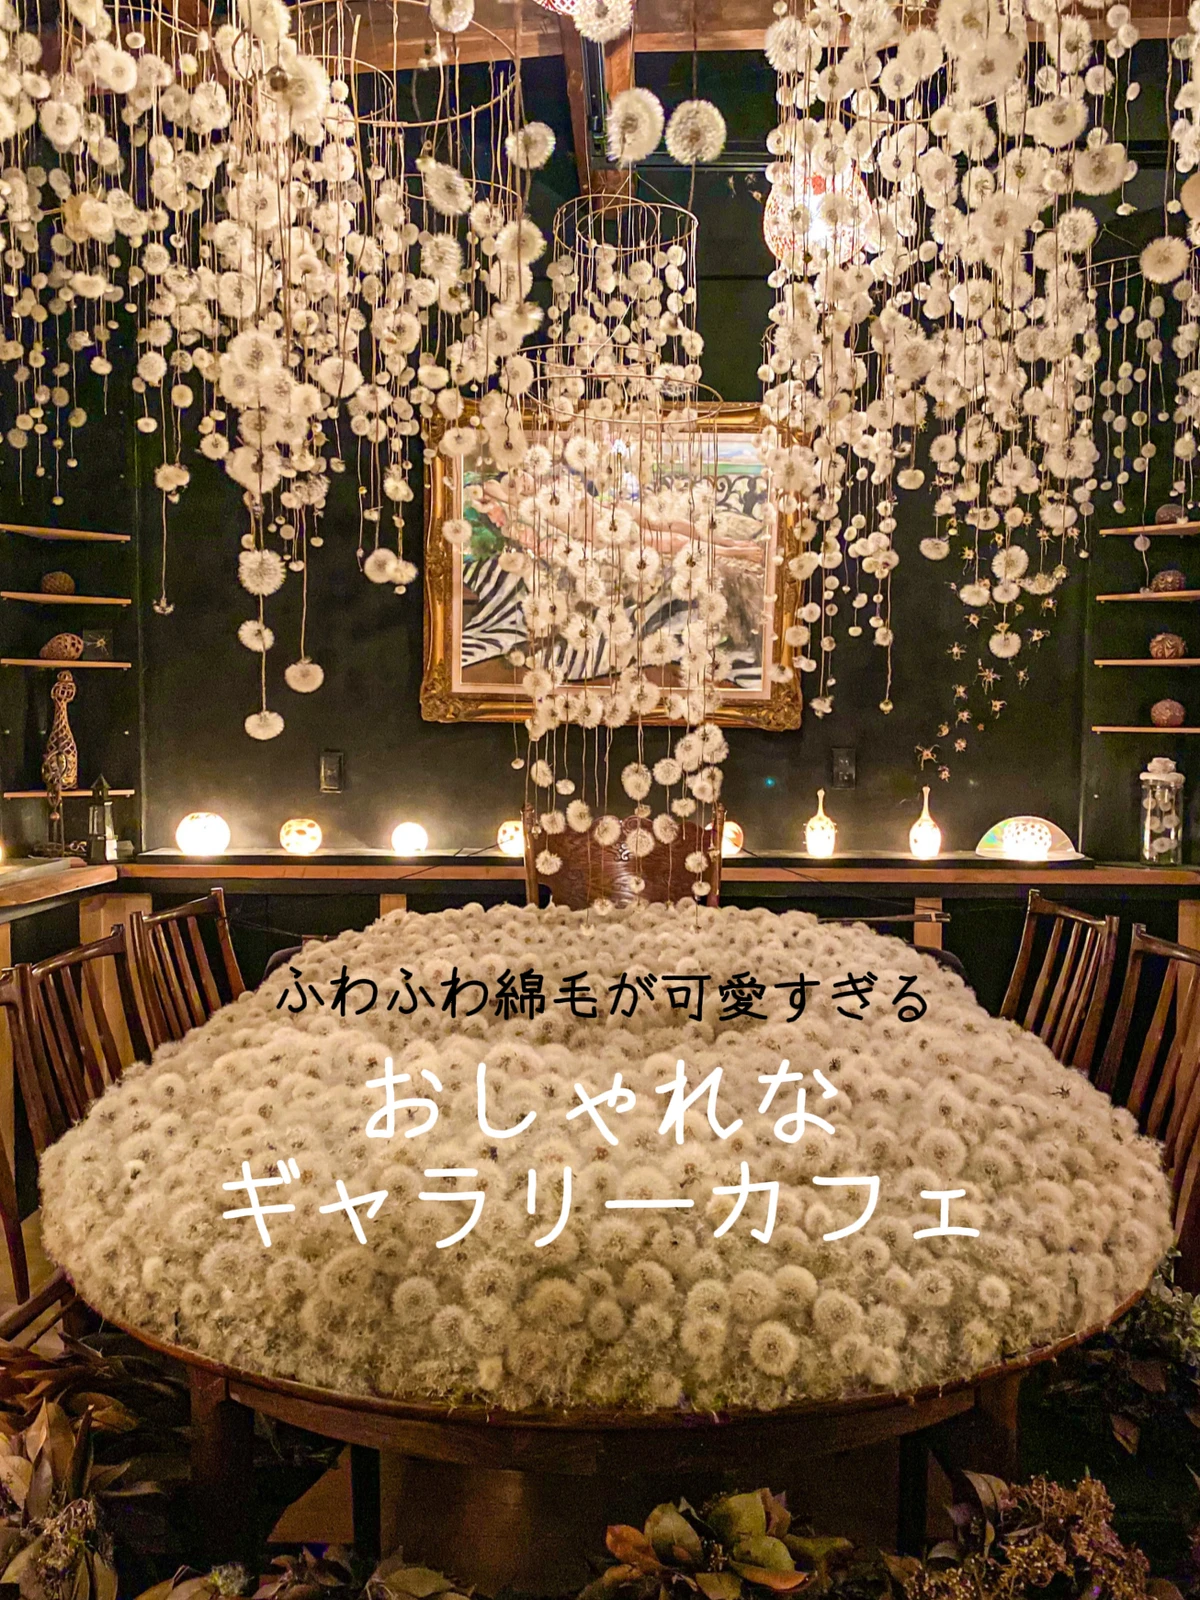 石川県 ふわふわな綿毛に包まれたい おしゃれすぎるギャラリーカフェ ひらゆいが投稿したフォトブック Lemon8